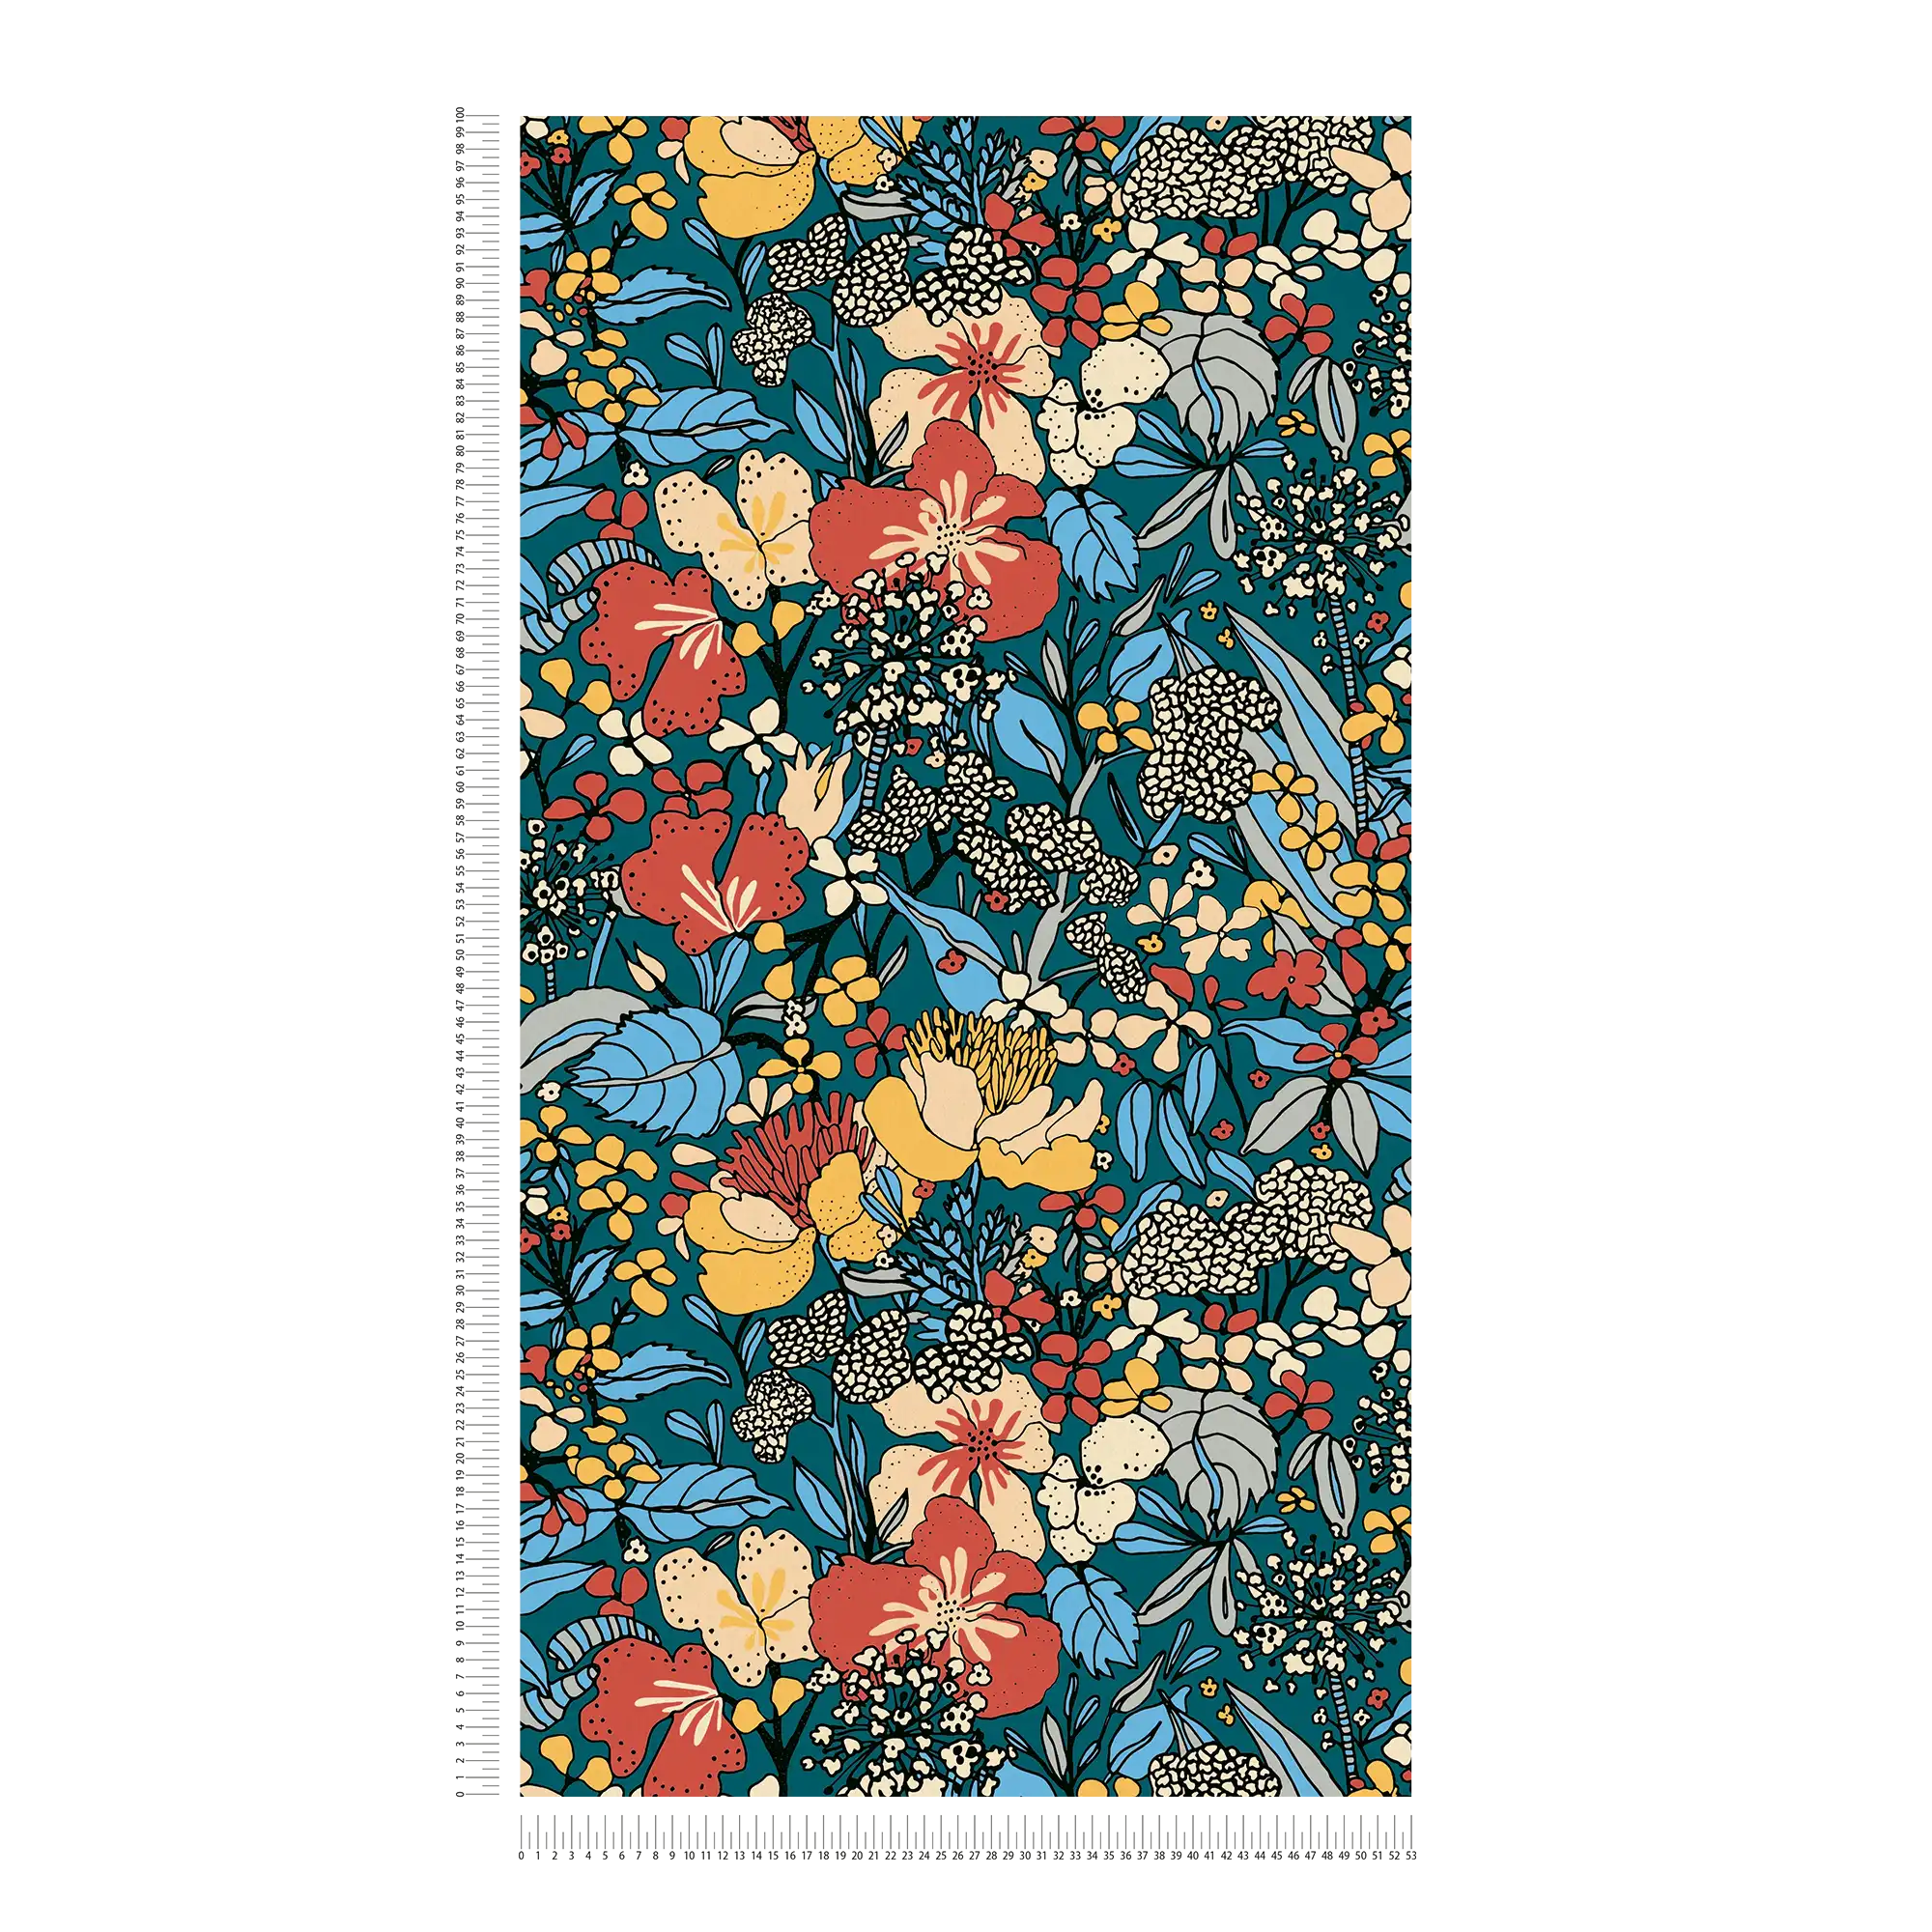             Papel pintado no tejido diseño floral retro de los años 70 - multicolor, azul, naranja
        